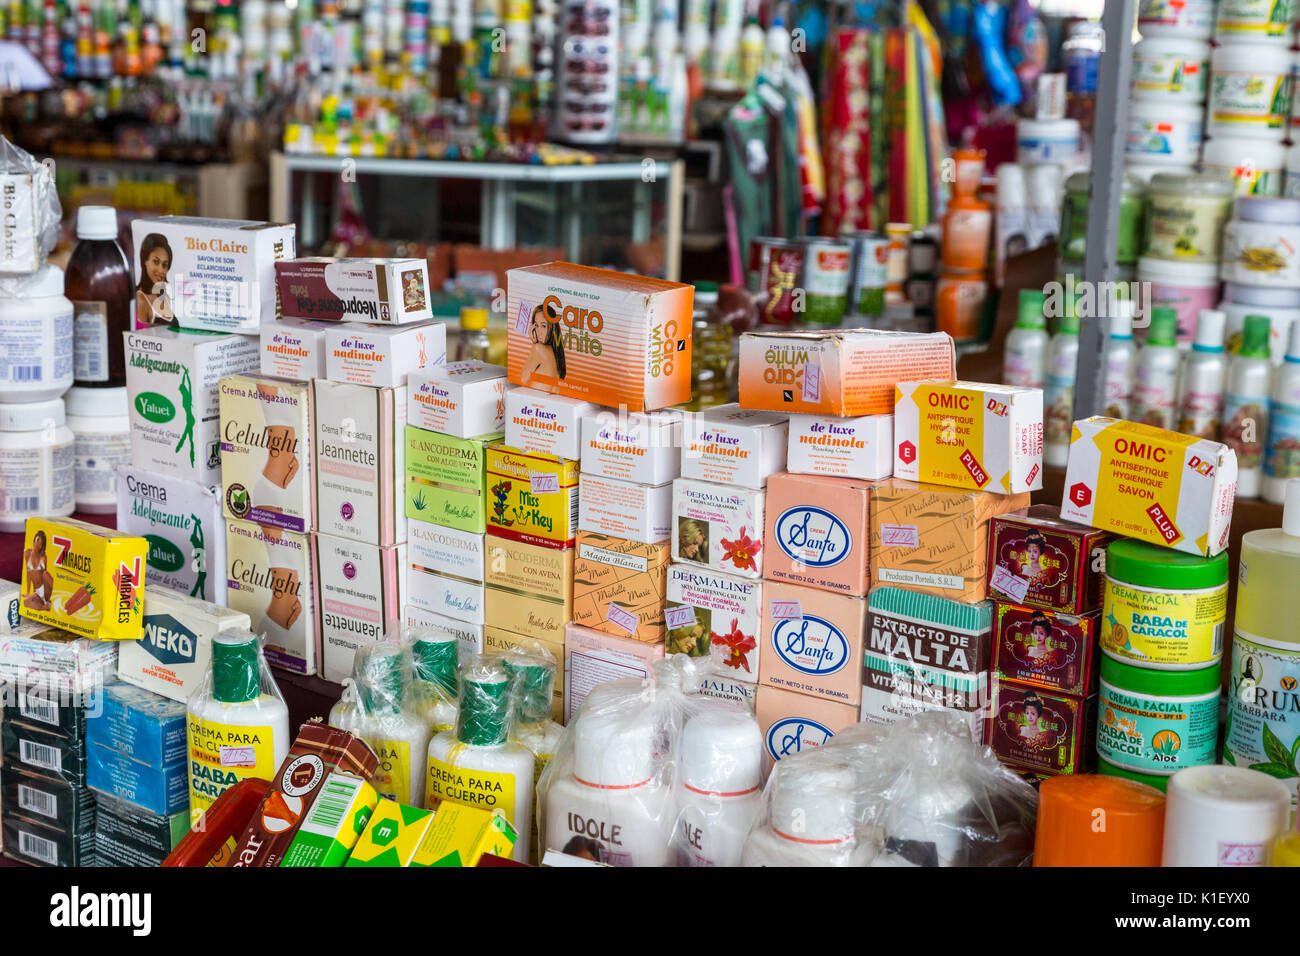 Willemstad, Curacao, Kleinen Antillen. Seifen und Körperpflegeprodukte, zentralen Markt. Stockfoto